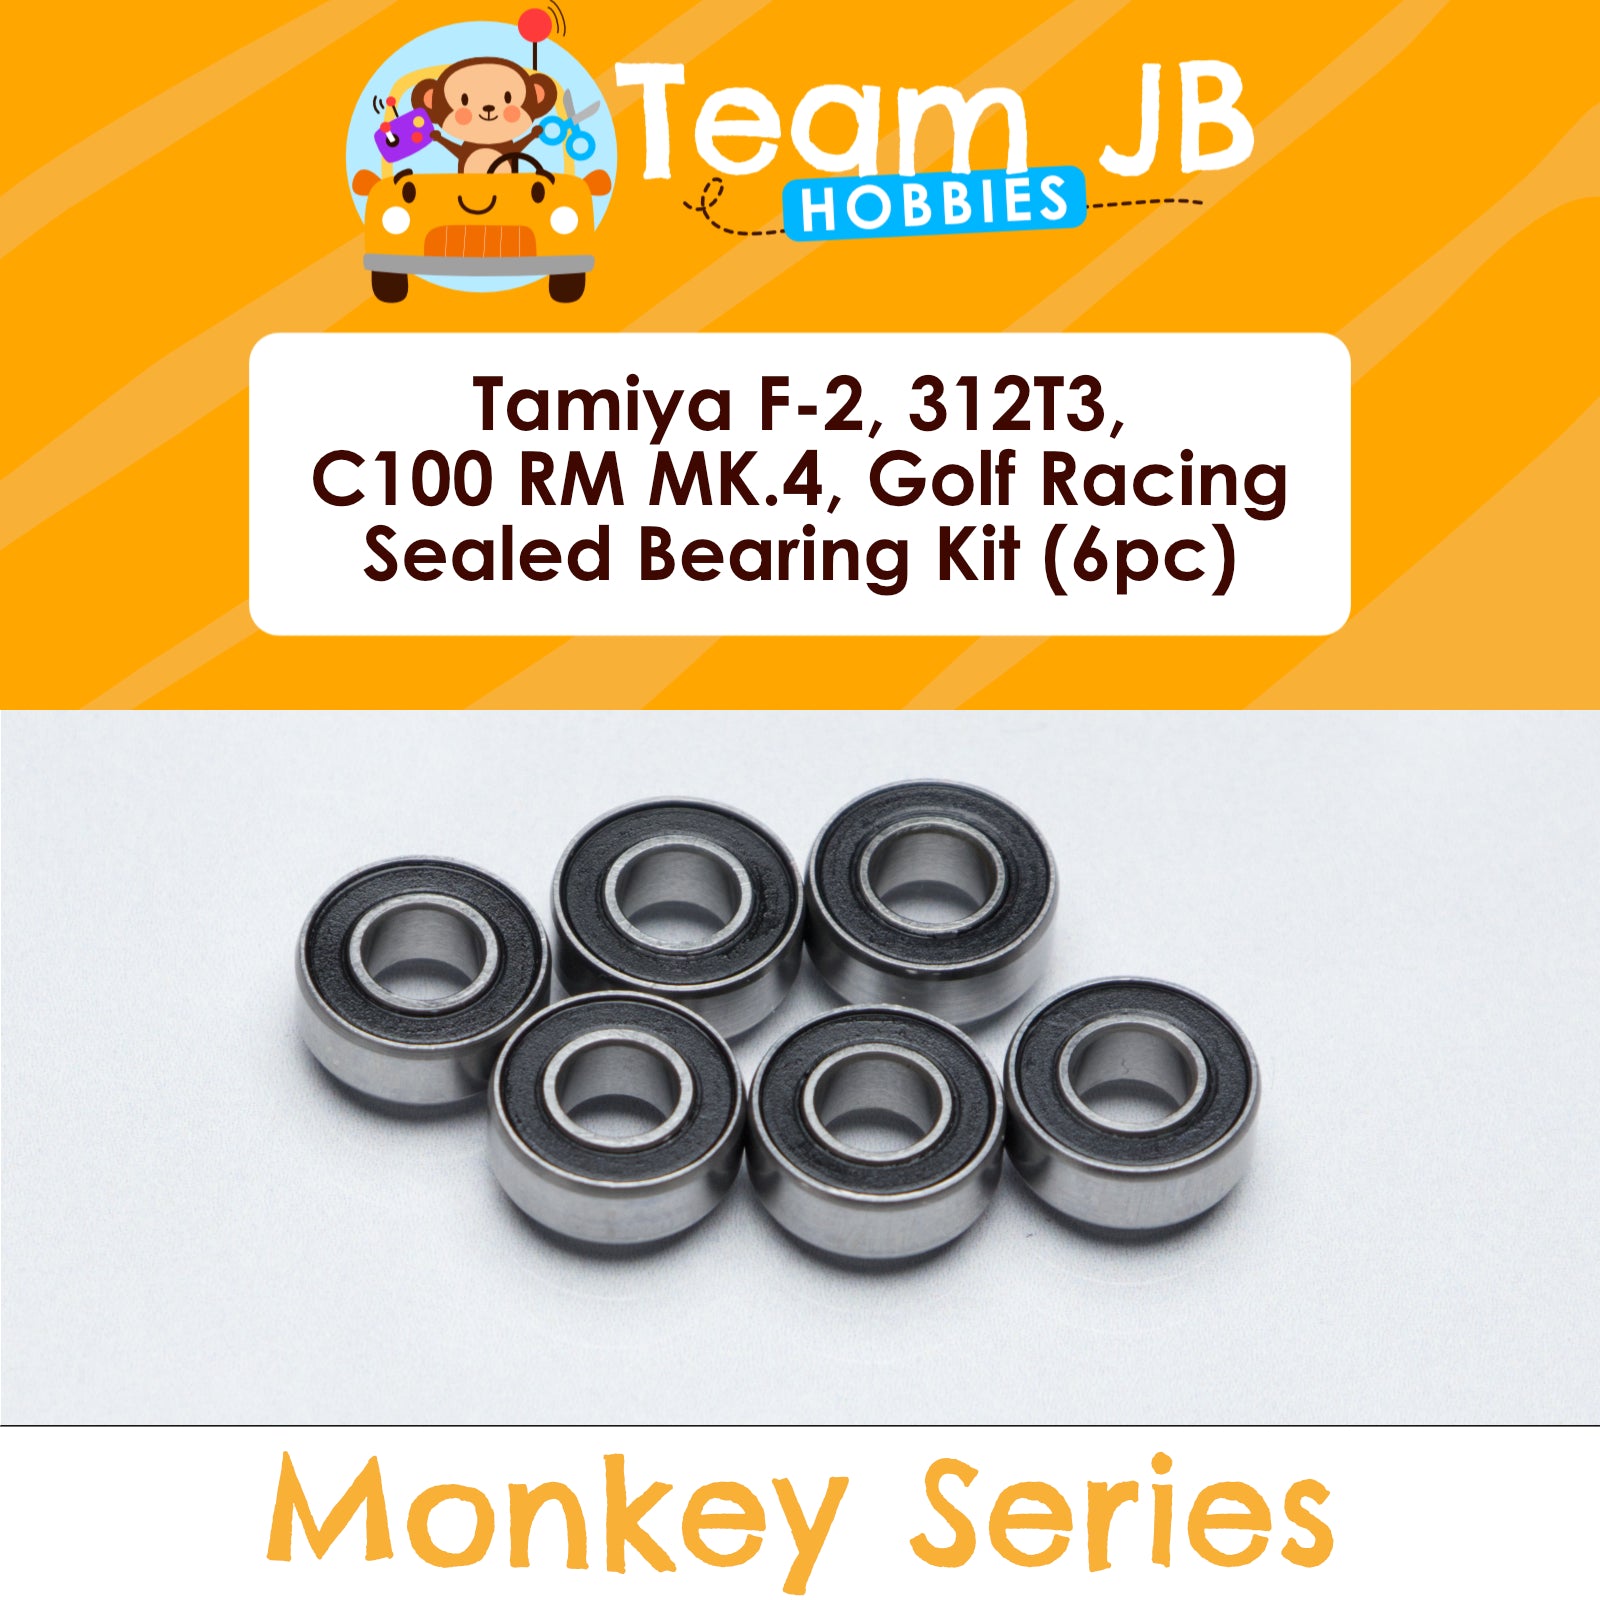 Tamiya F-2, 312T3, C100 RM MK.4, Golf Racing Group - Sealed Bearing Kit